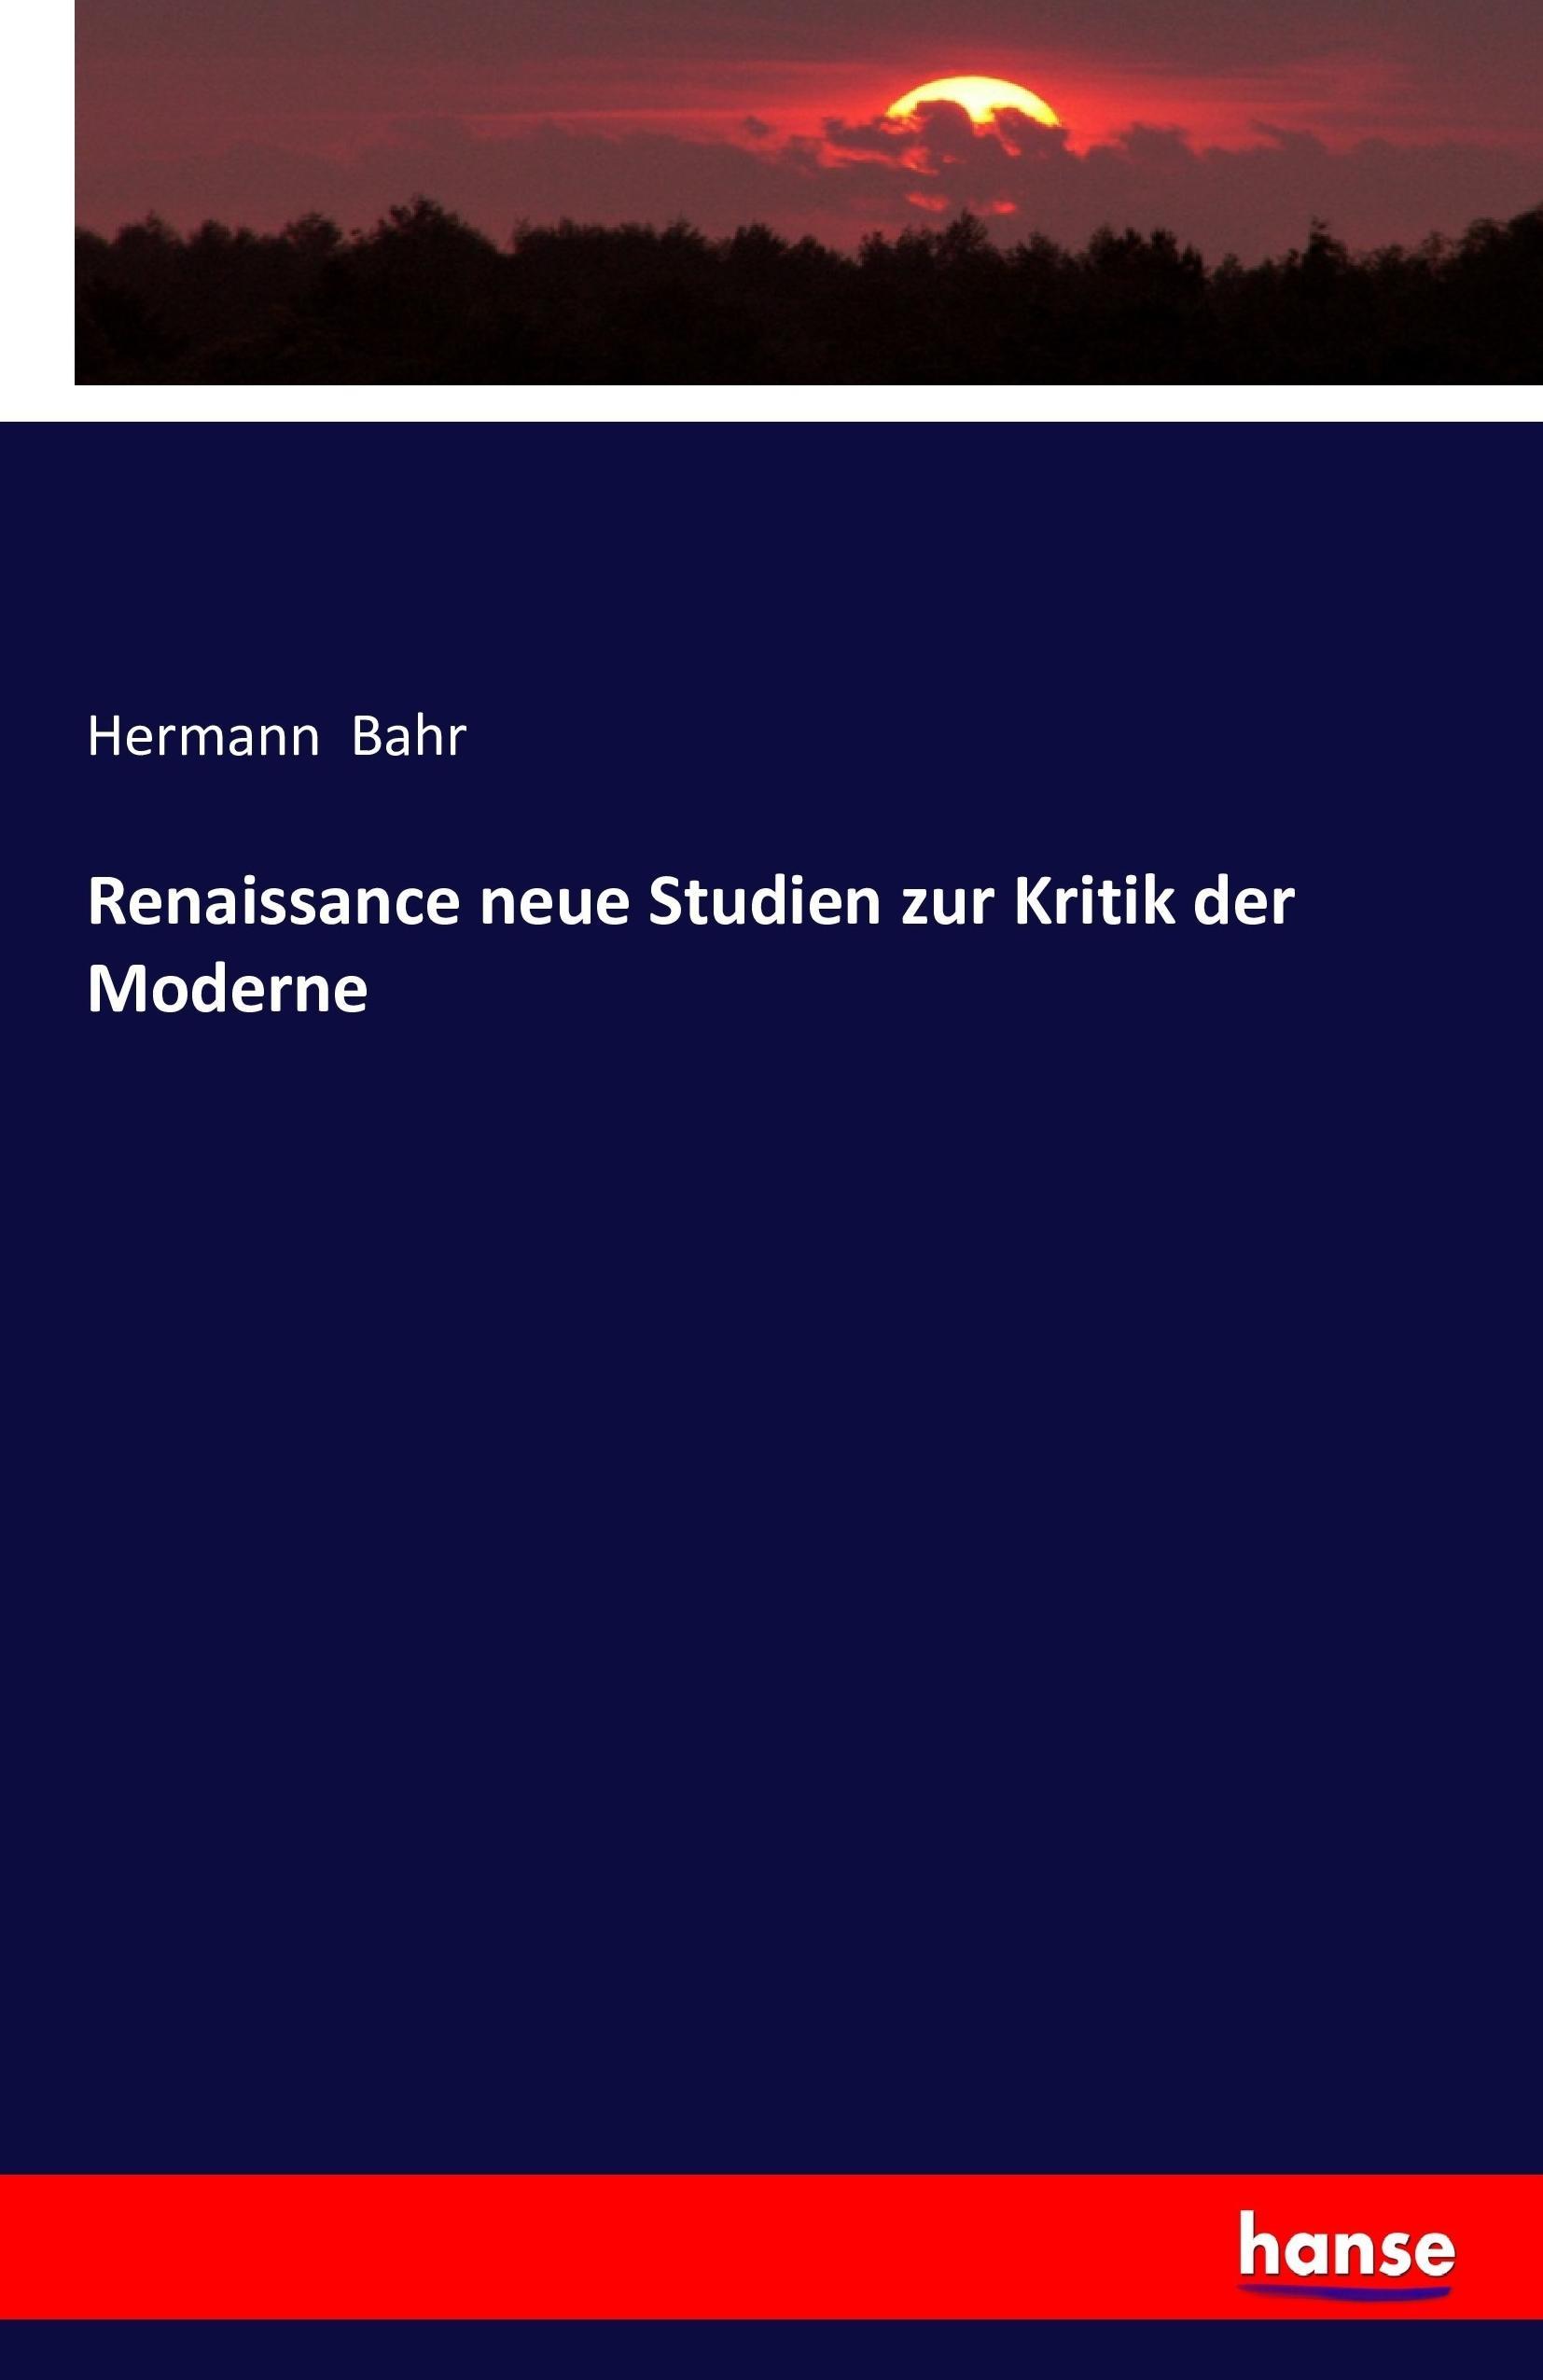 Renaissance neue Studien zur Kritik der Moderne - Bahr, Hermann